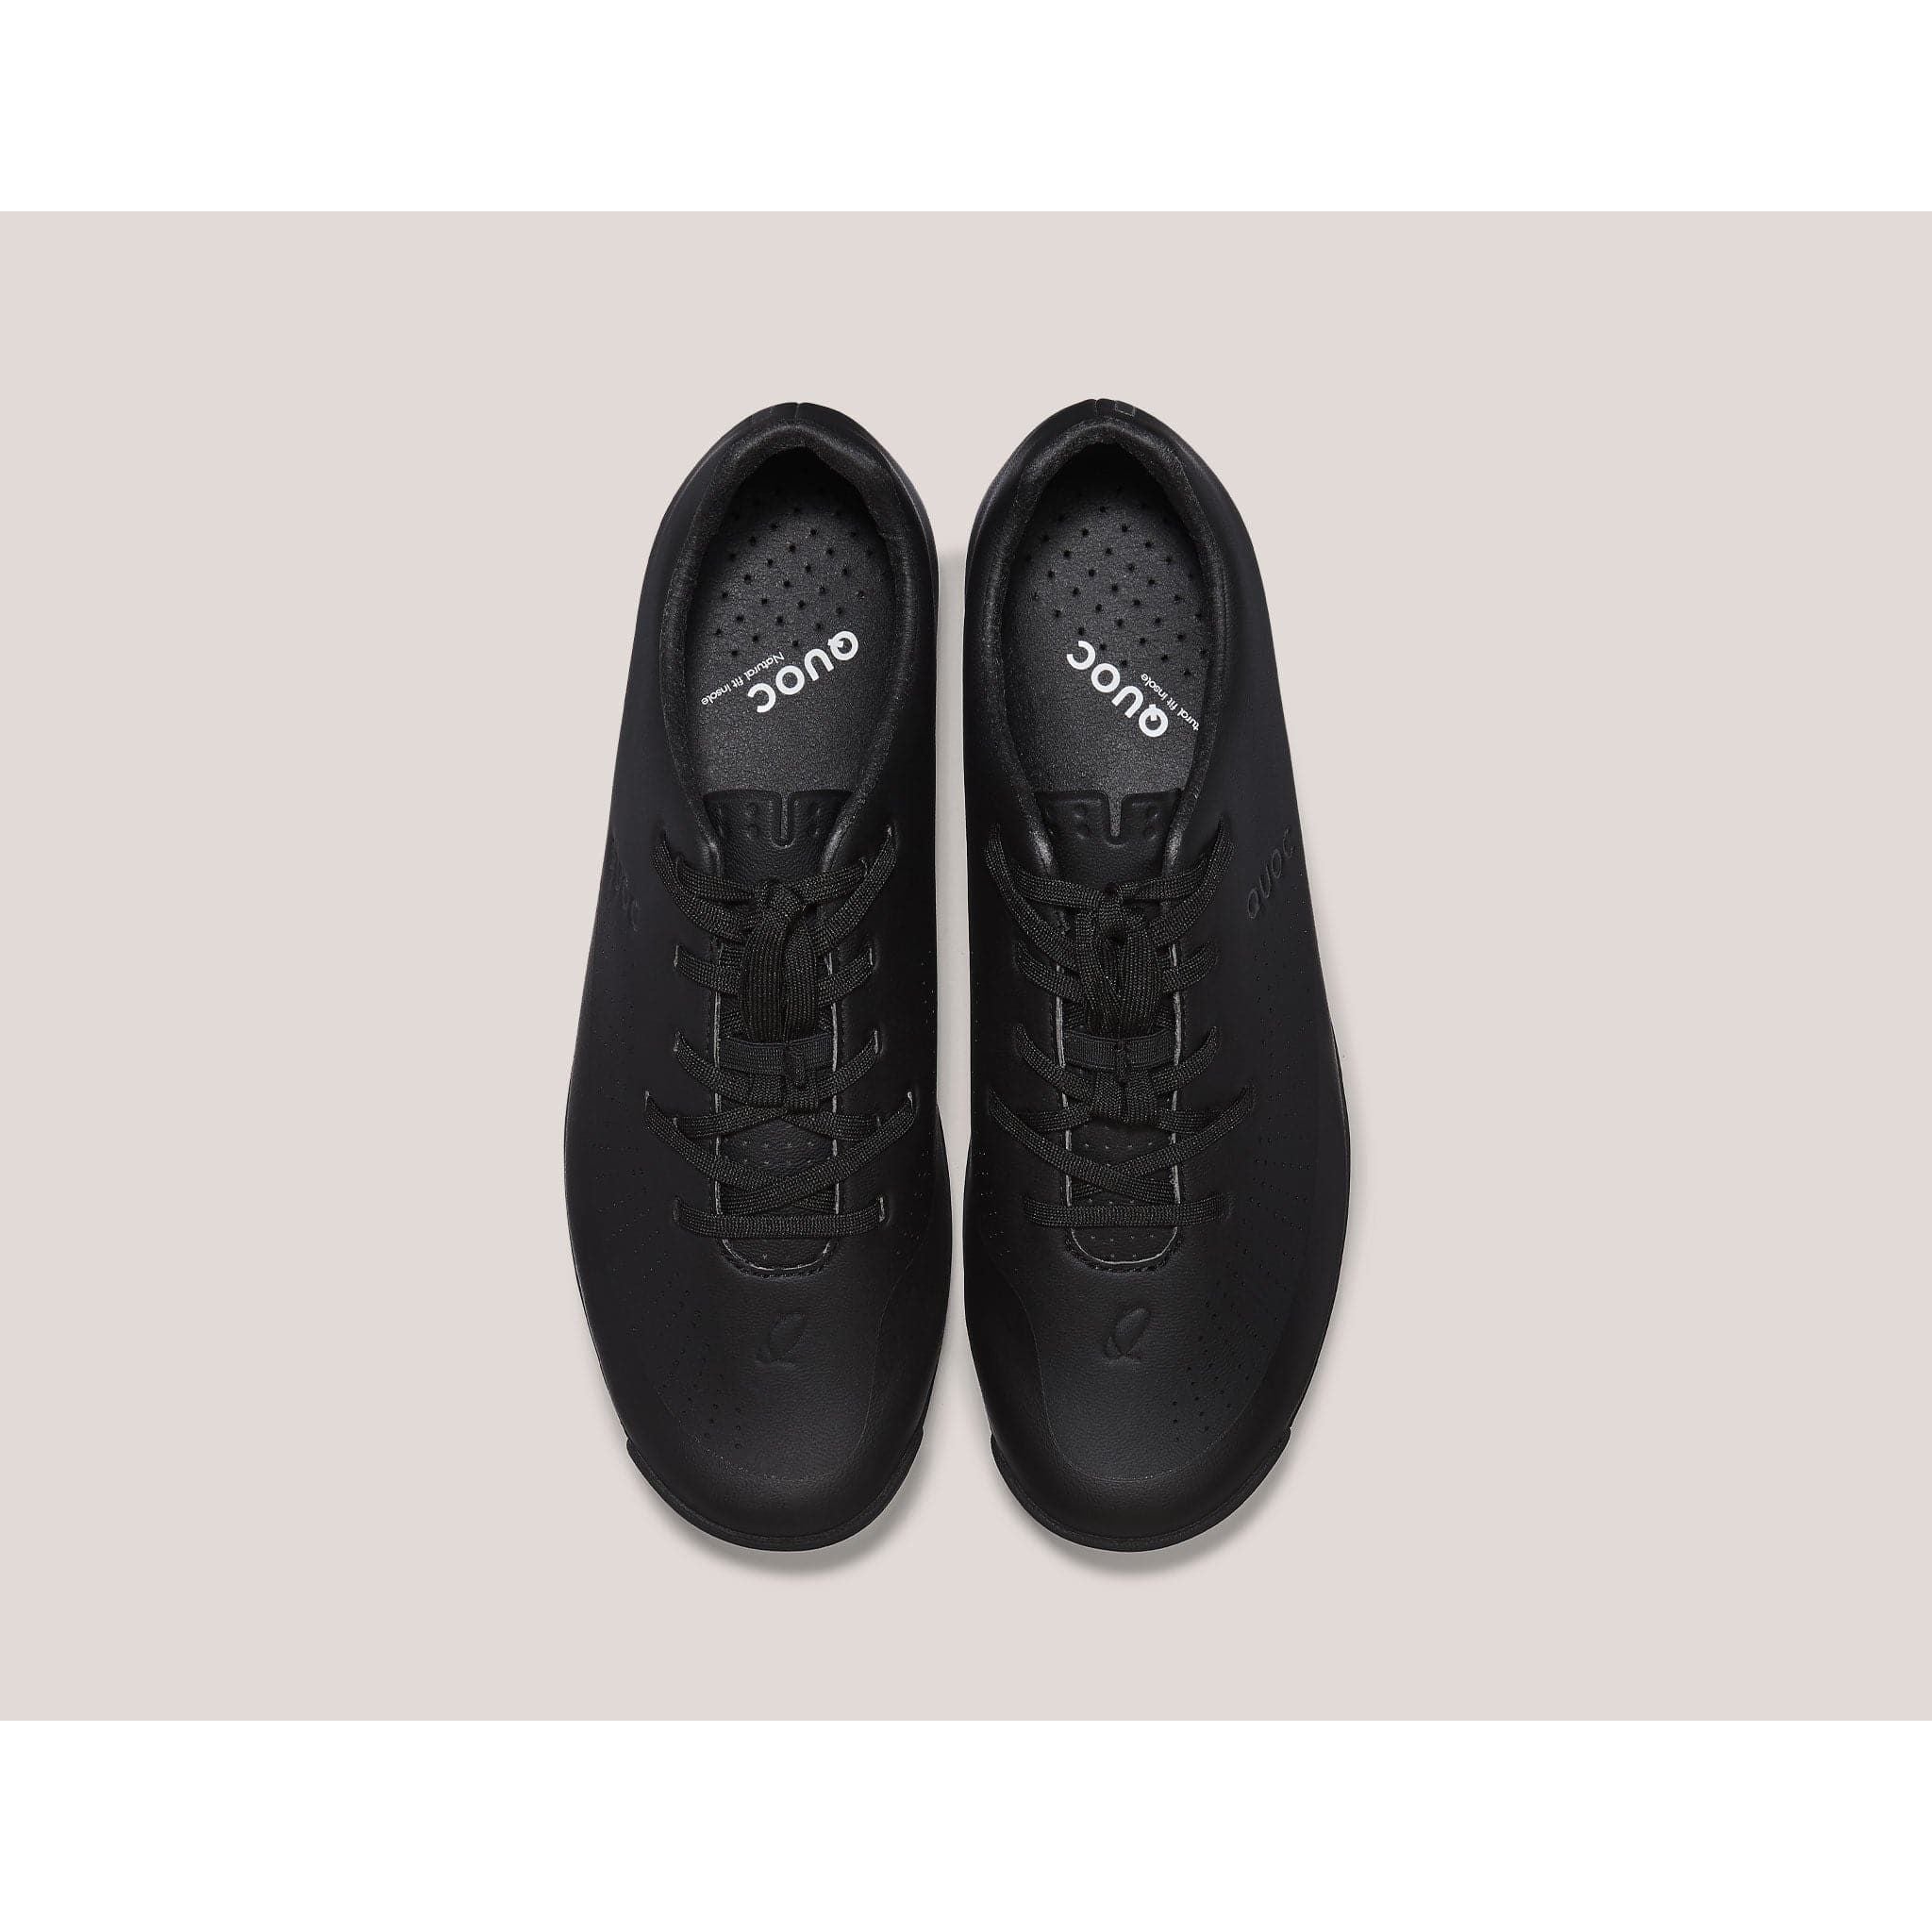 Quoc Gran Tourer Gravel Shoes - Black